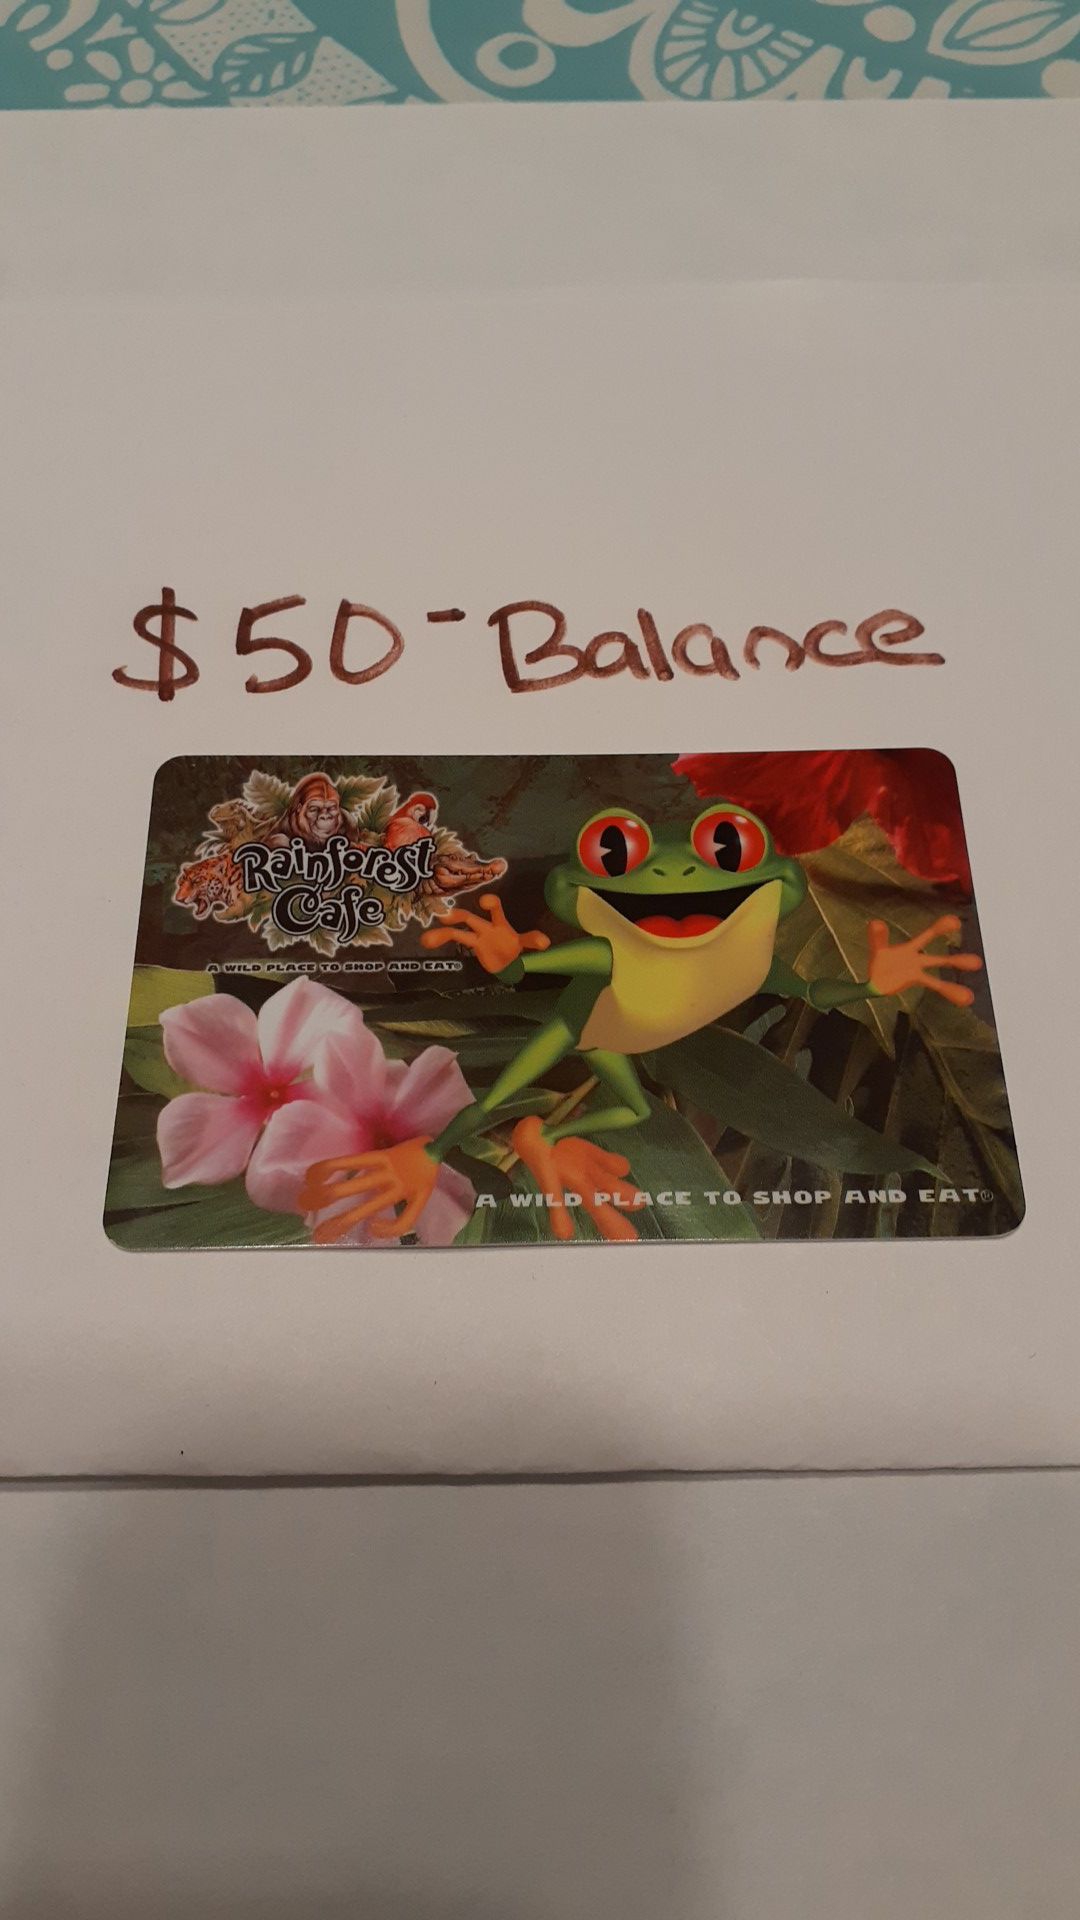 RAIN FOREST CAFE / LANDRY'S CARD $50 balance SAVE $15